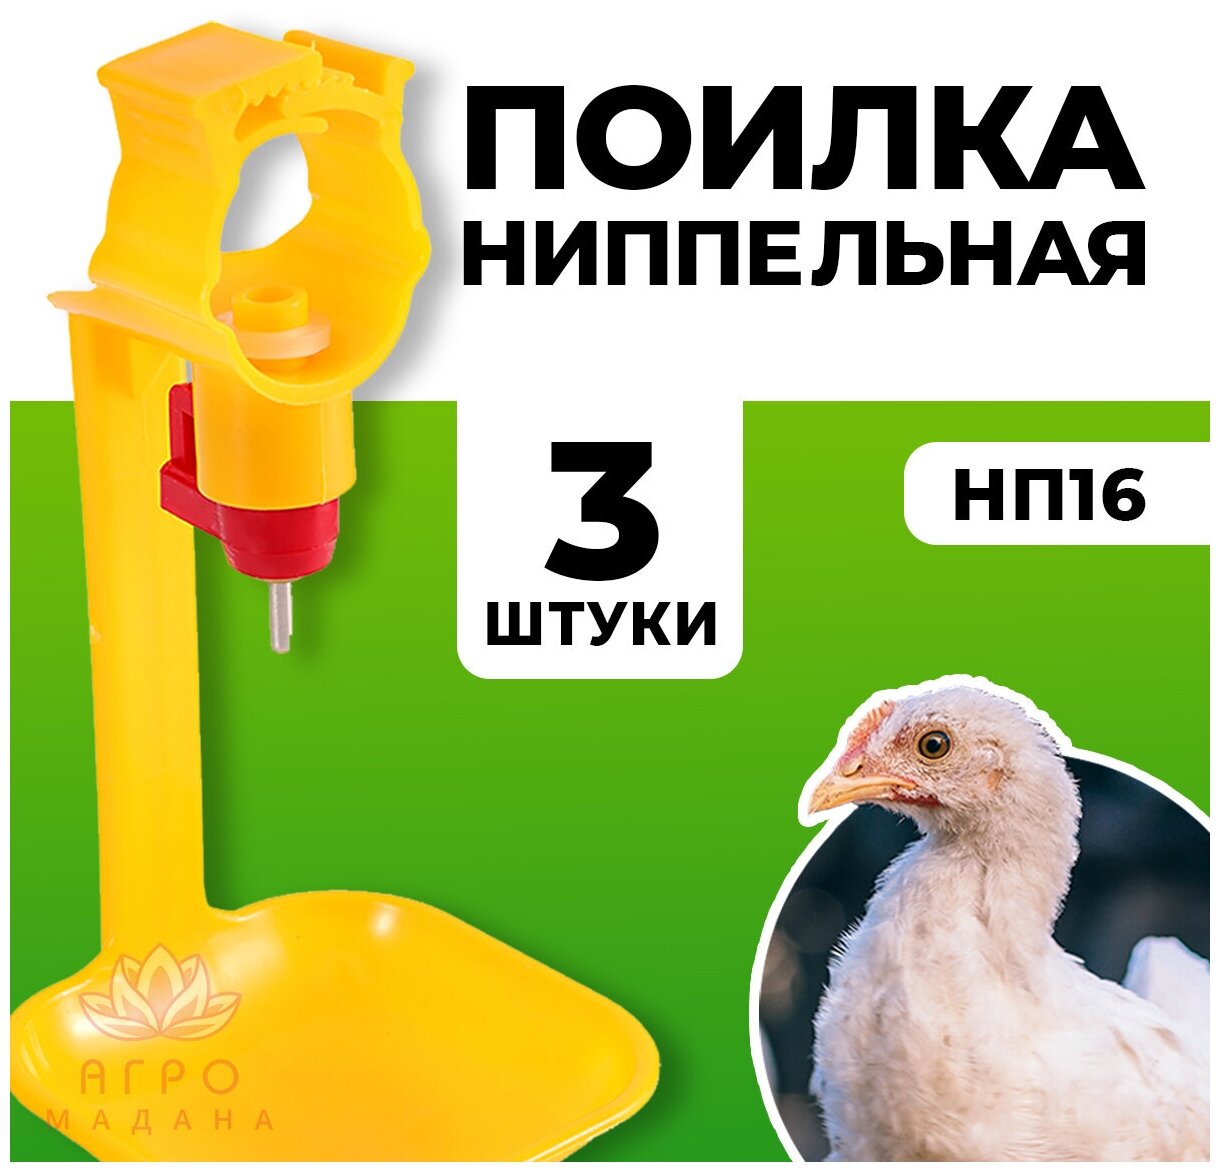 3шт Ниппельная поилка НП16 на 360 градусов для птиц / Ниппельная автопоилка для кур, для перепелов, для бройлеров, для цыплят - фотография № 1